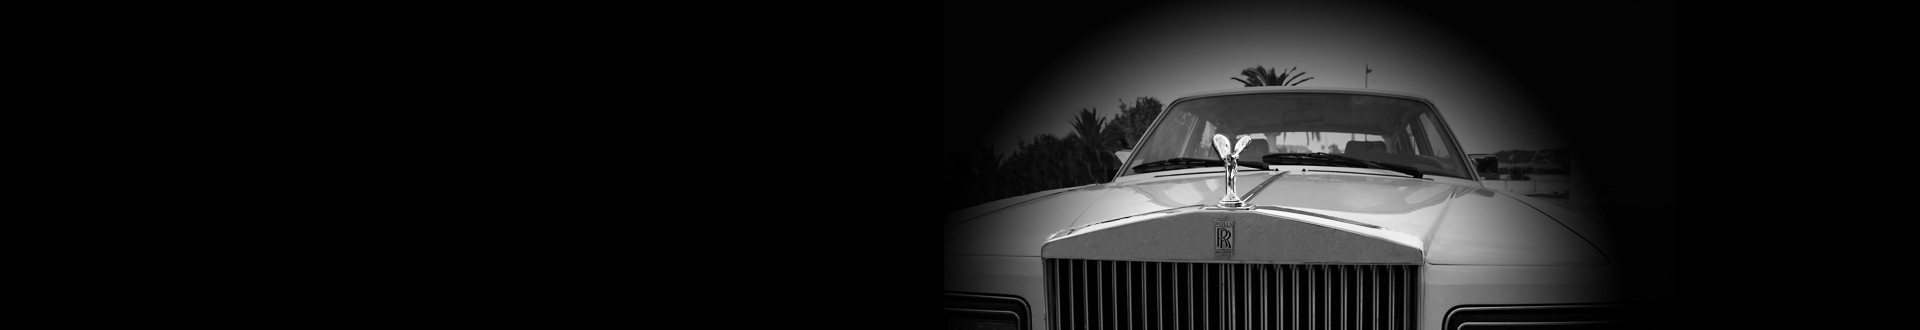 La Rolls Royce Silver Spirit-Et le rêve devient réalité